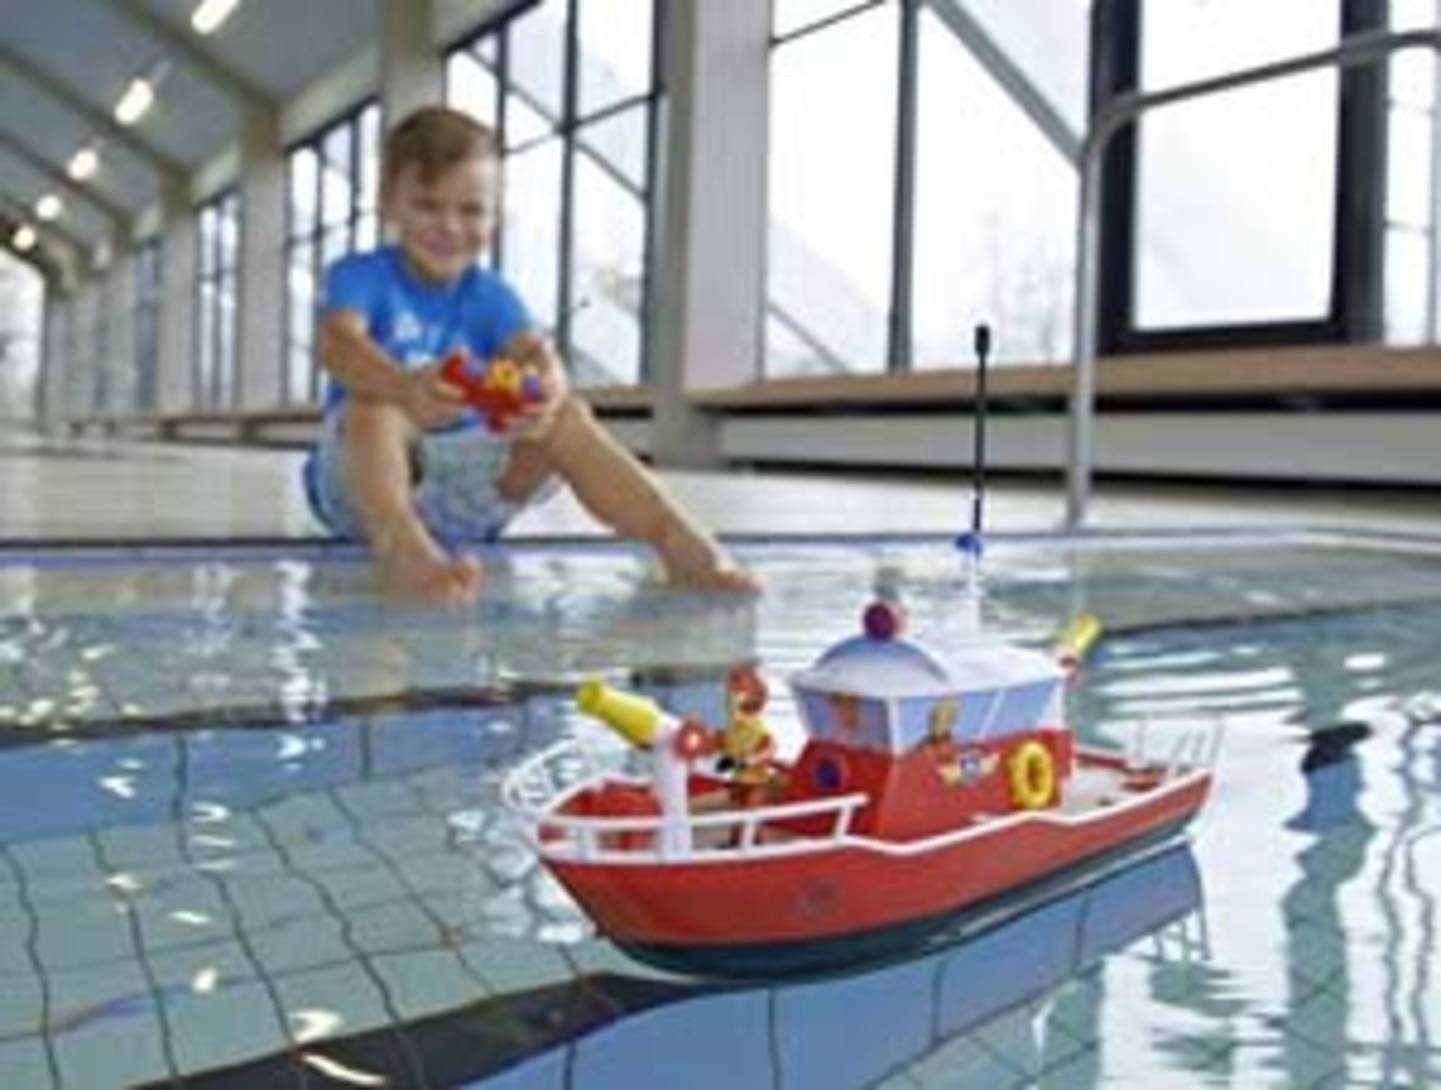 L'enfant joue avec un bateau de pompier